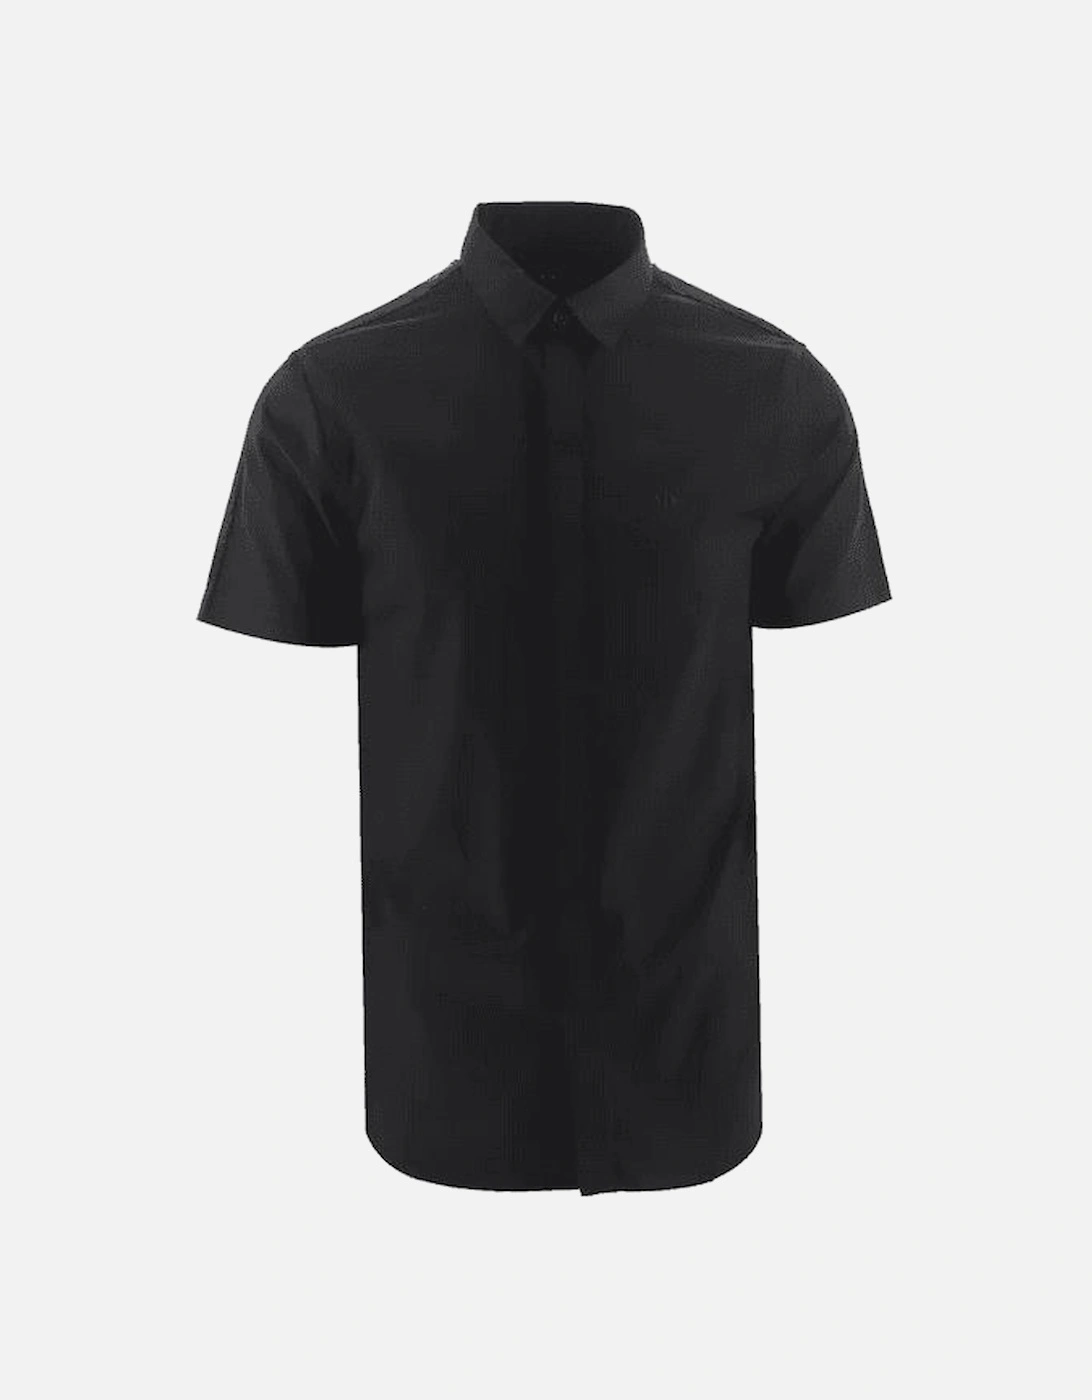 Woven Black Button Up Short Sleeve Shirt, 4 of 3